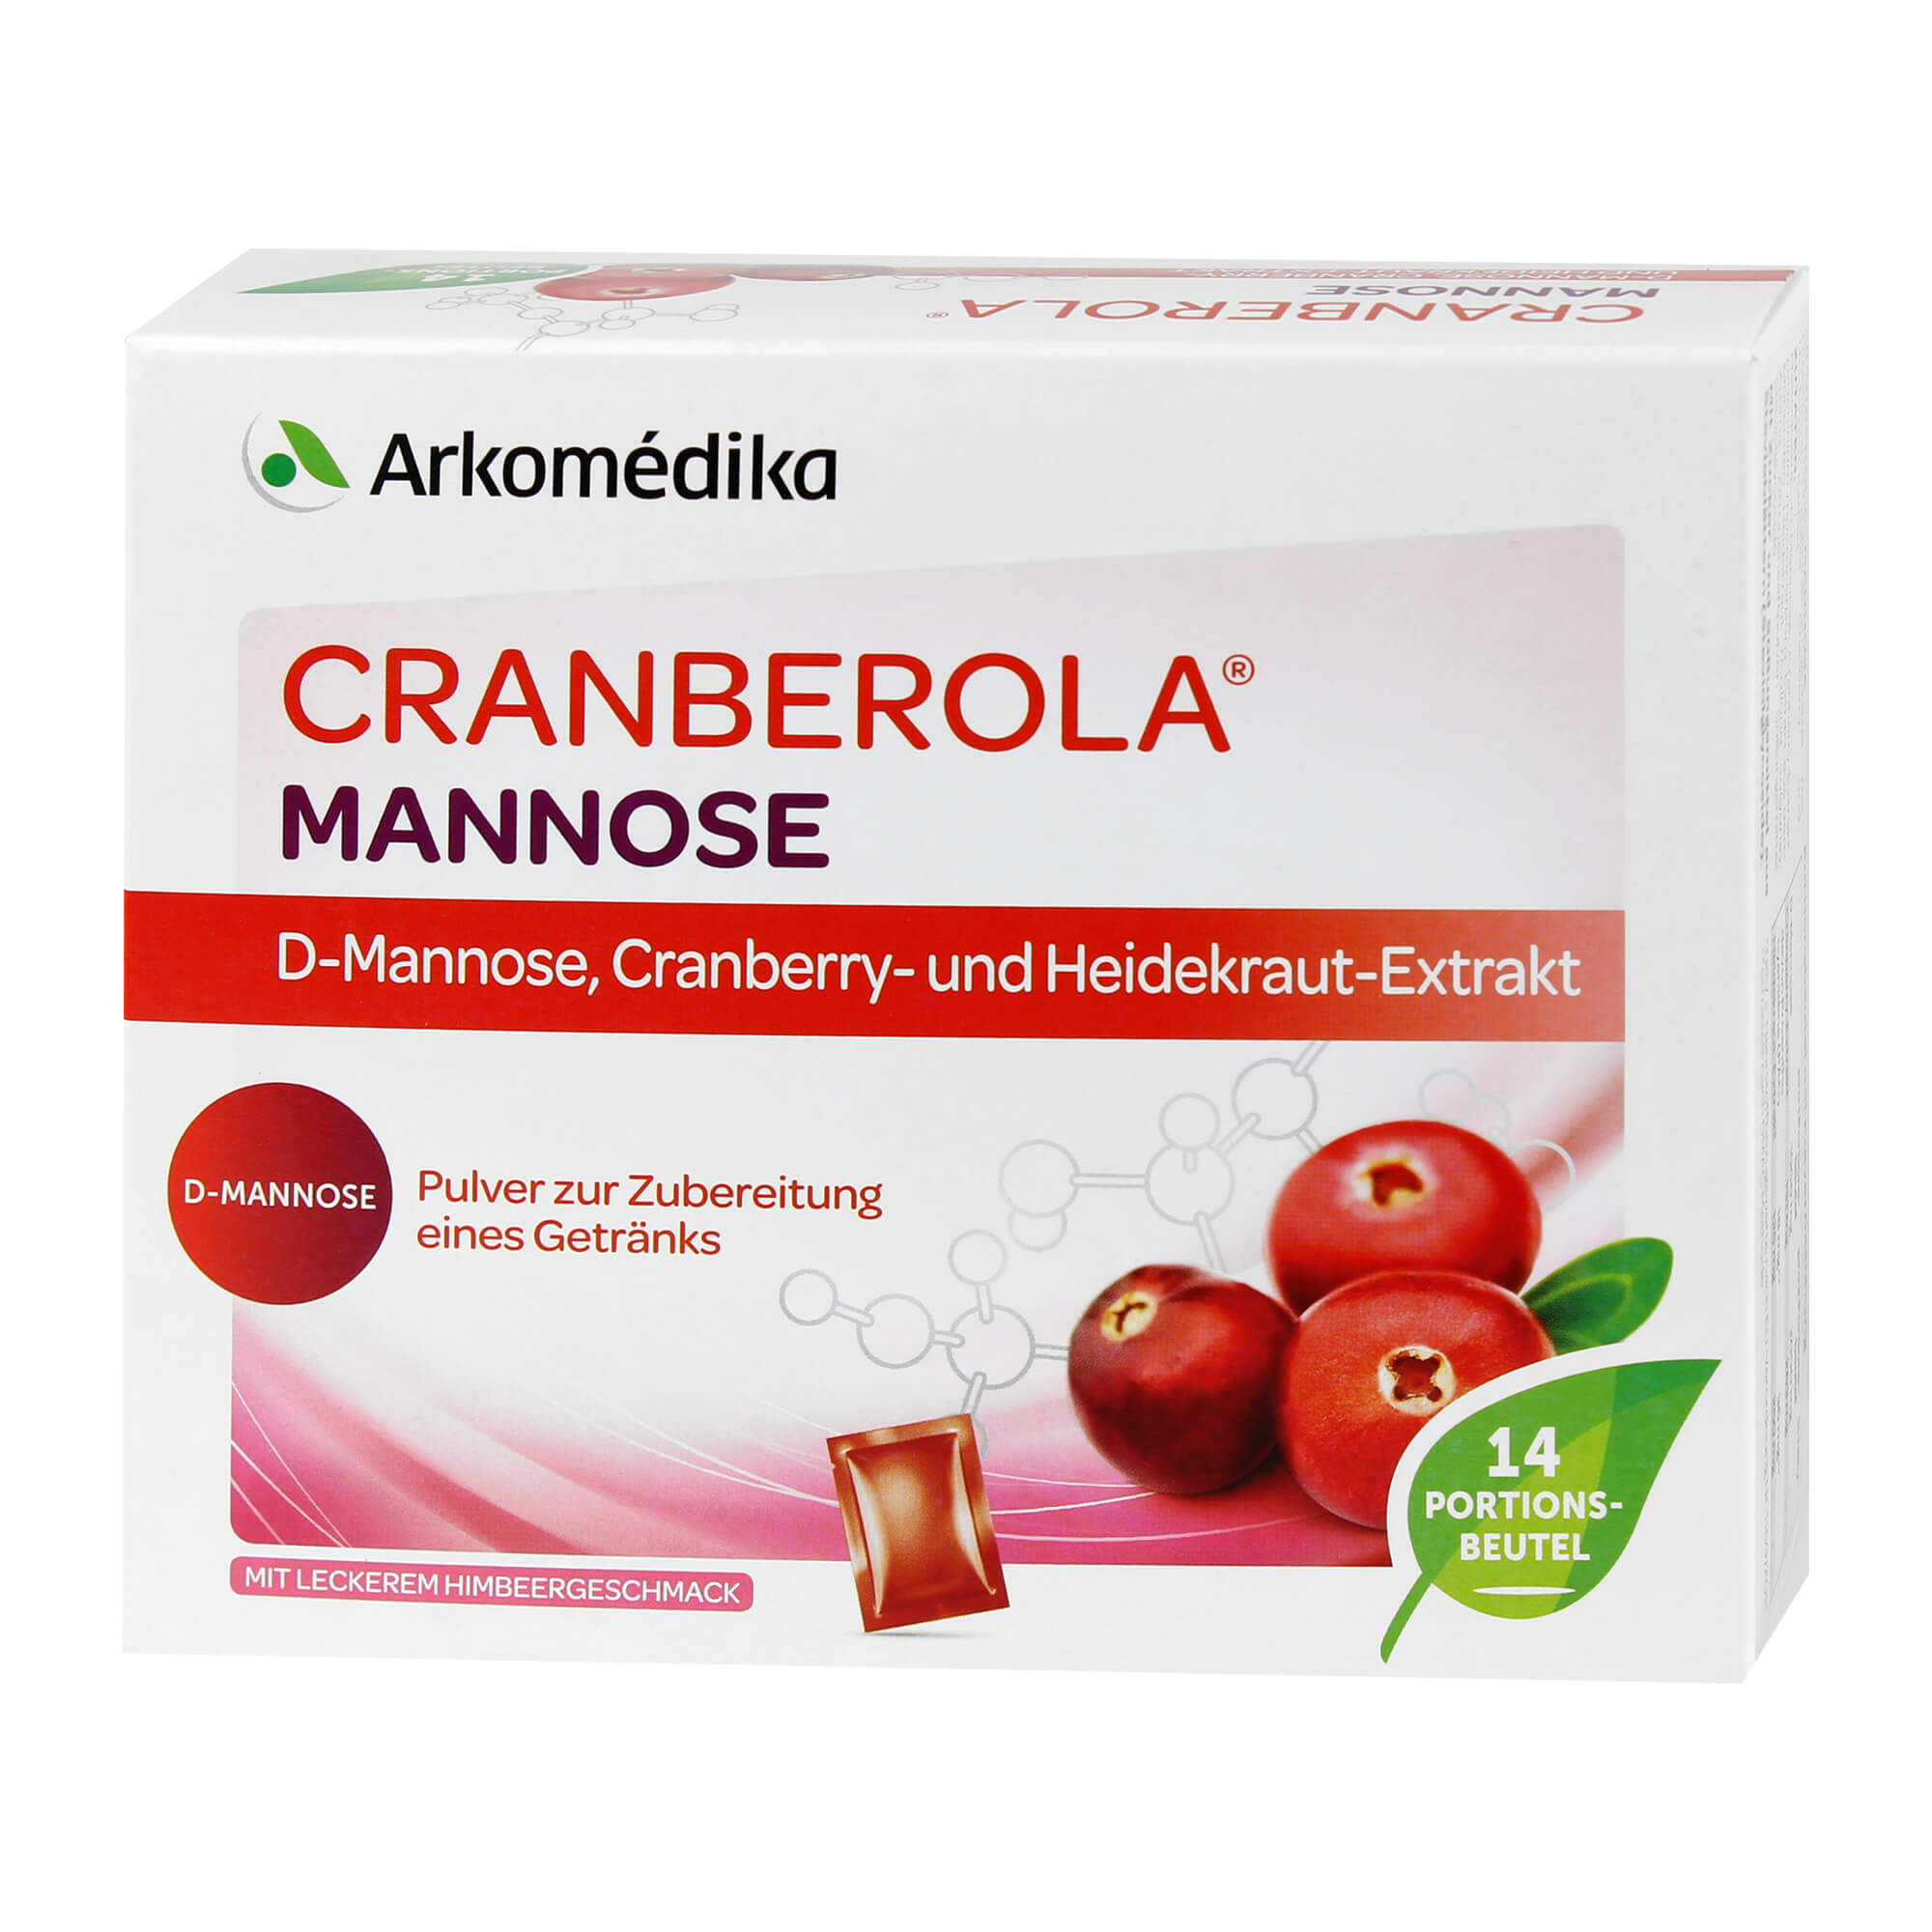 Nahrungsergänzungsmittel mit D-Mannose, Cranberry-und Heidekraut-Extrakt. Mit Zucker und Süßungsmittel.